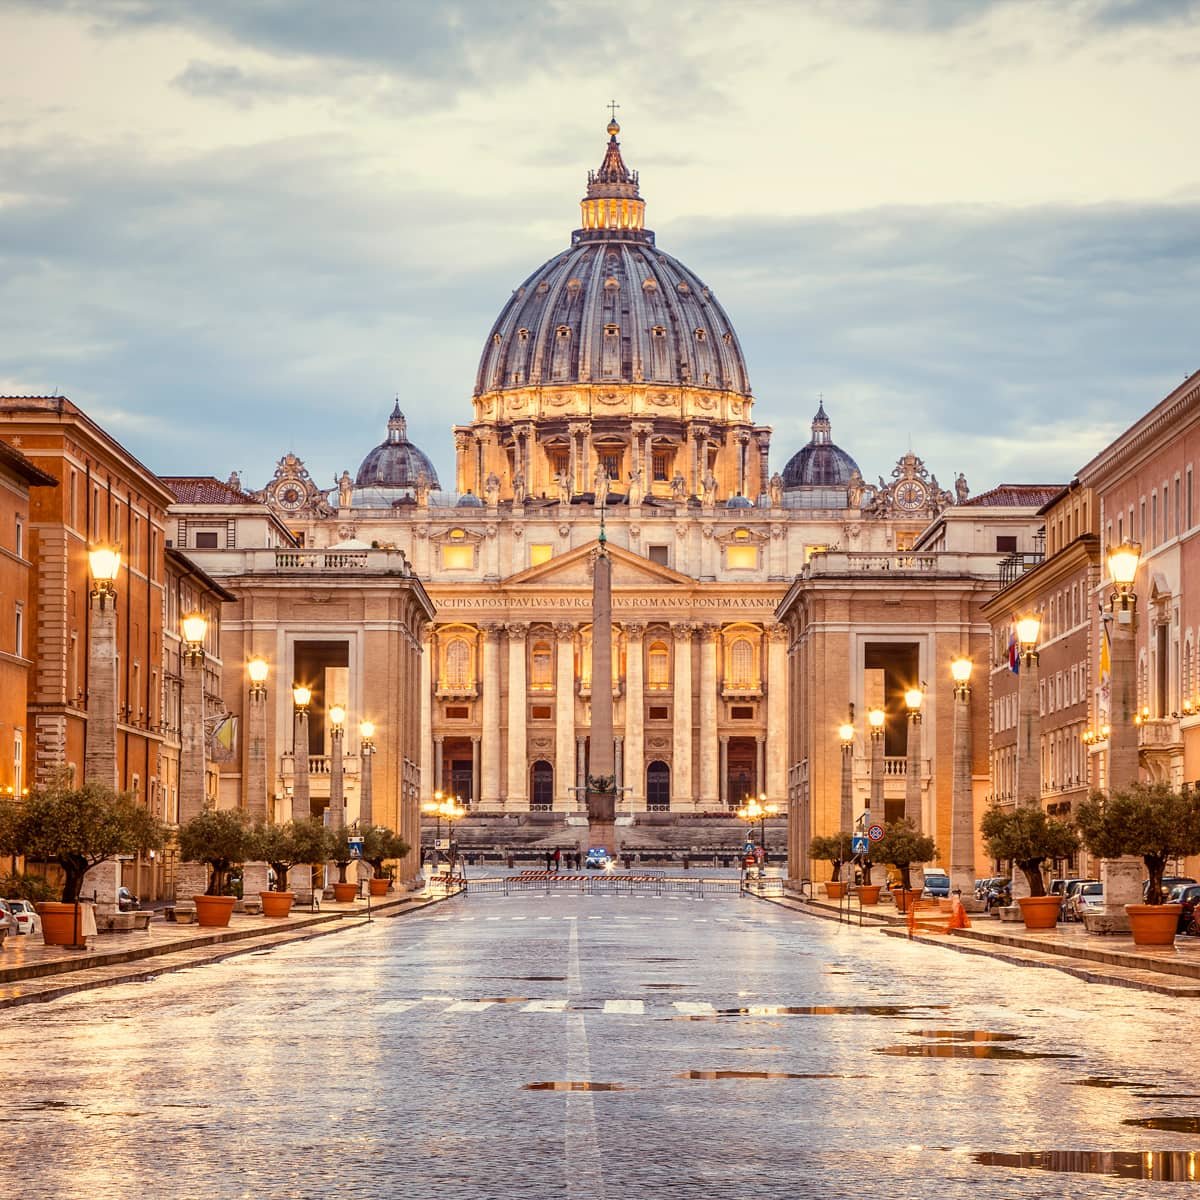 Vaticano vai entrar no metaverso com galeria de arte em NFT?